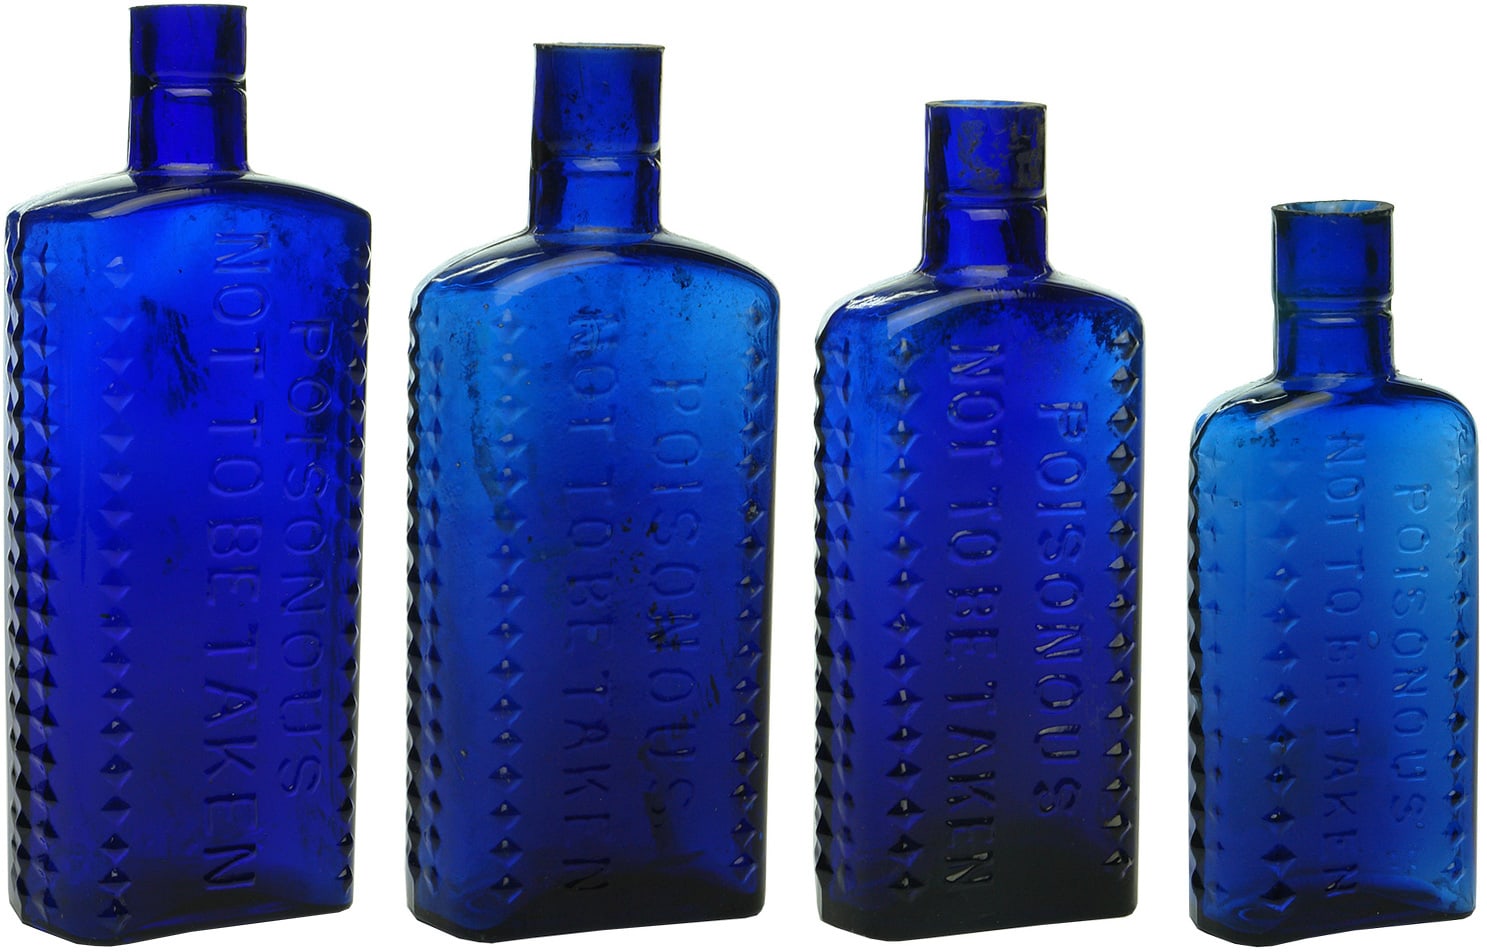 Poison Not to be Taken Cobalt Blue Bottles